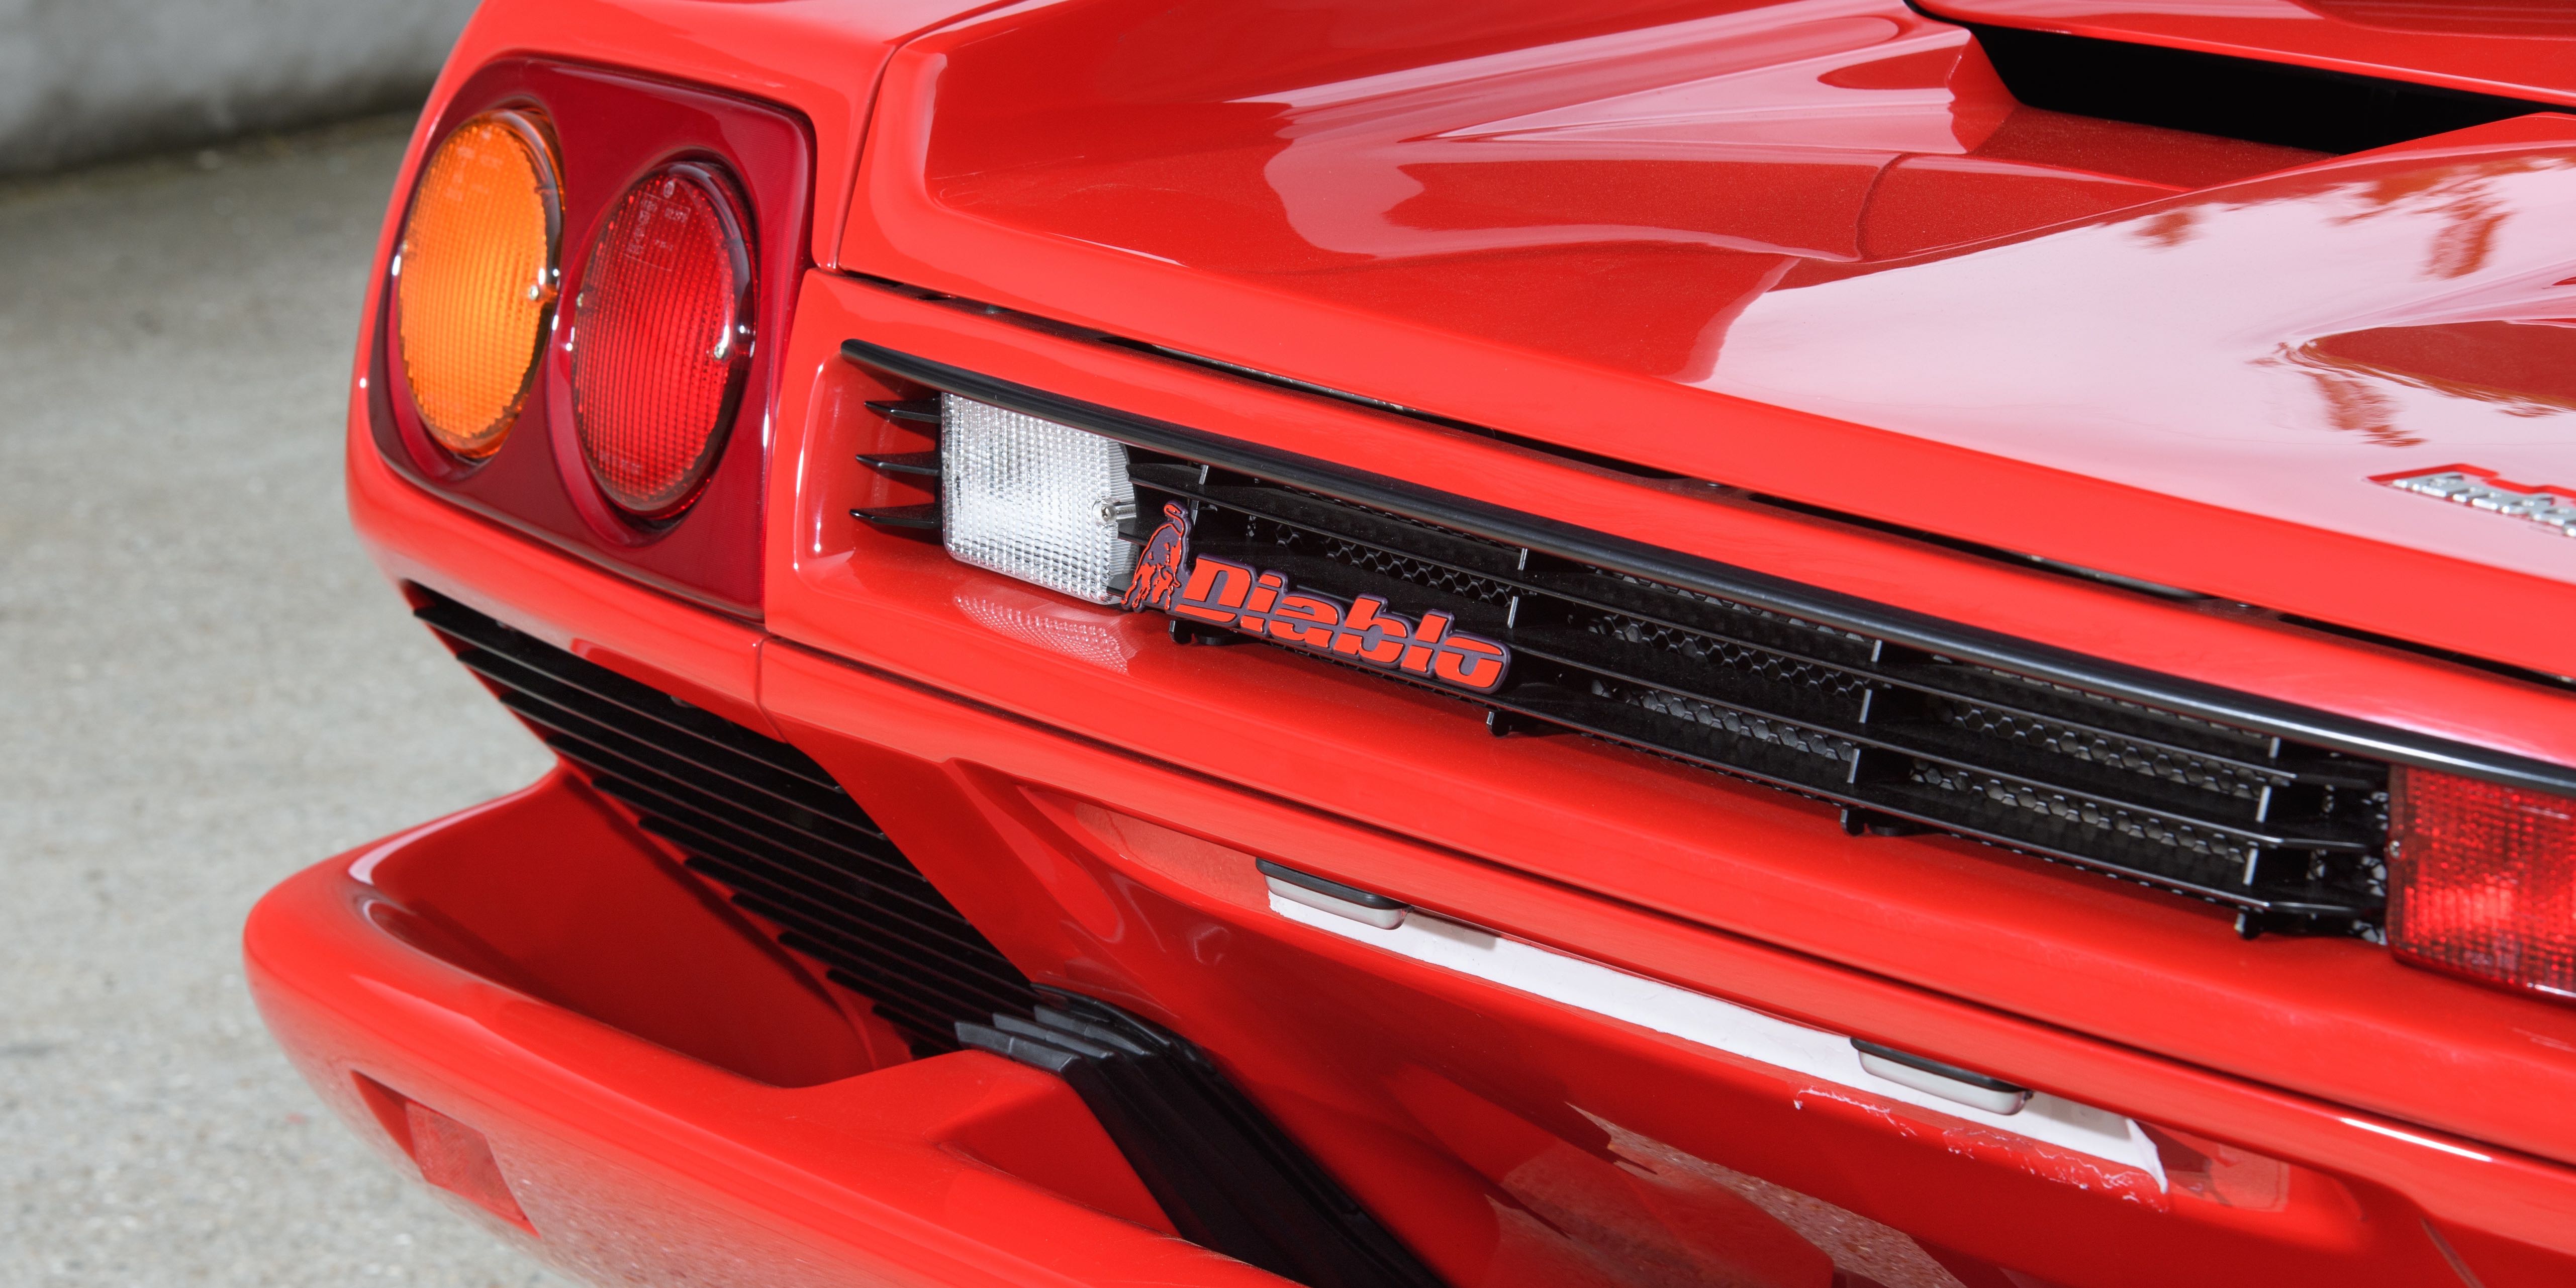 Lamborghini Diablo, Red cars Wallpaper